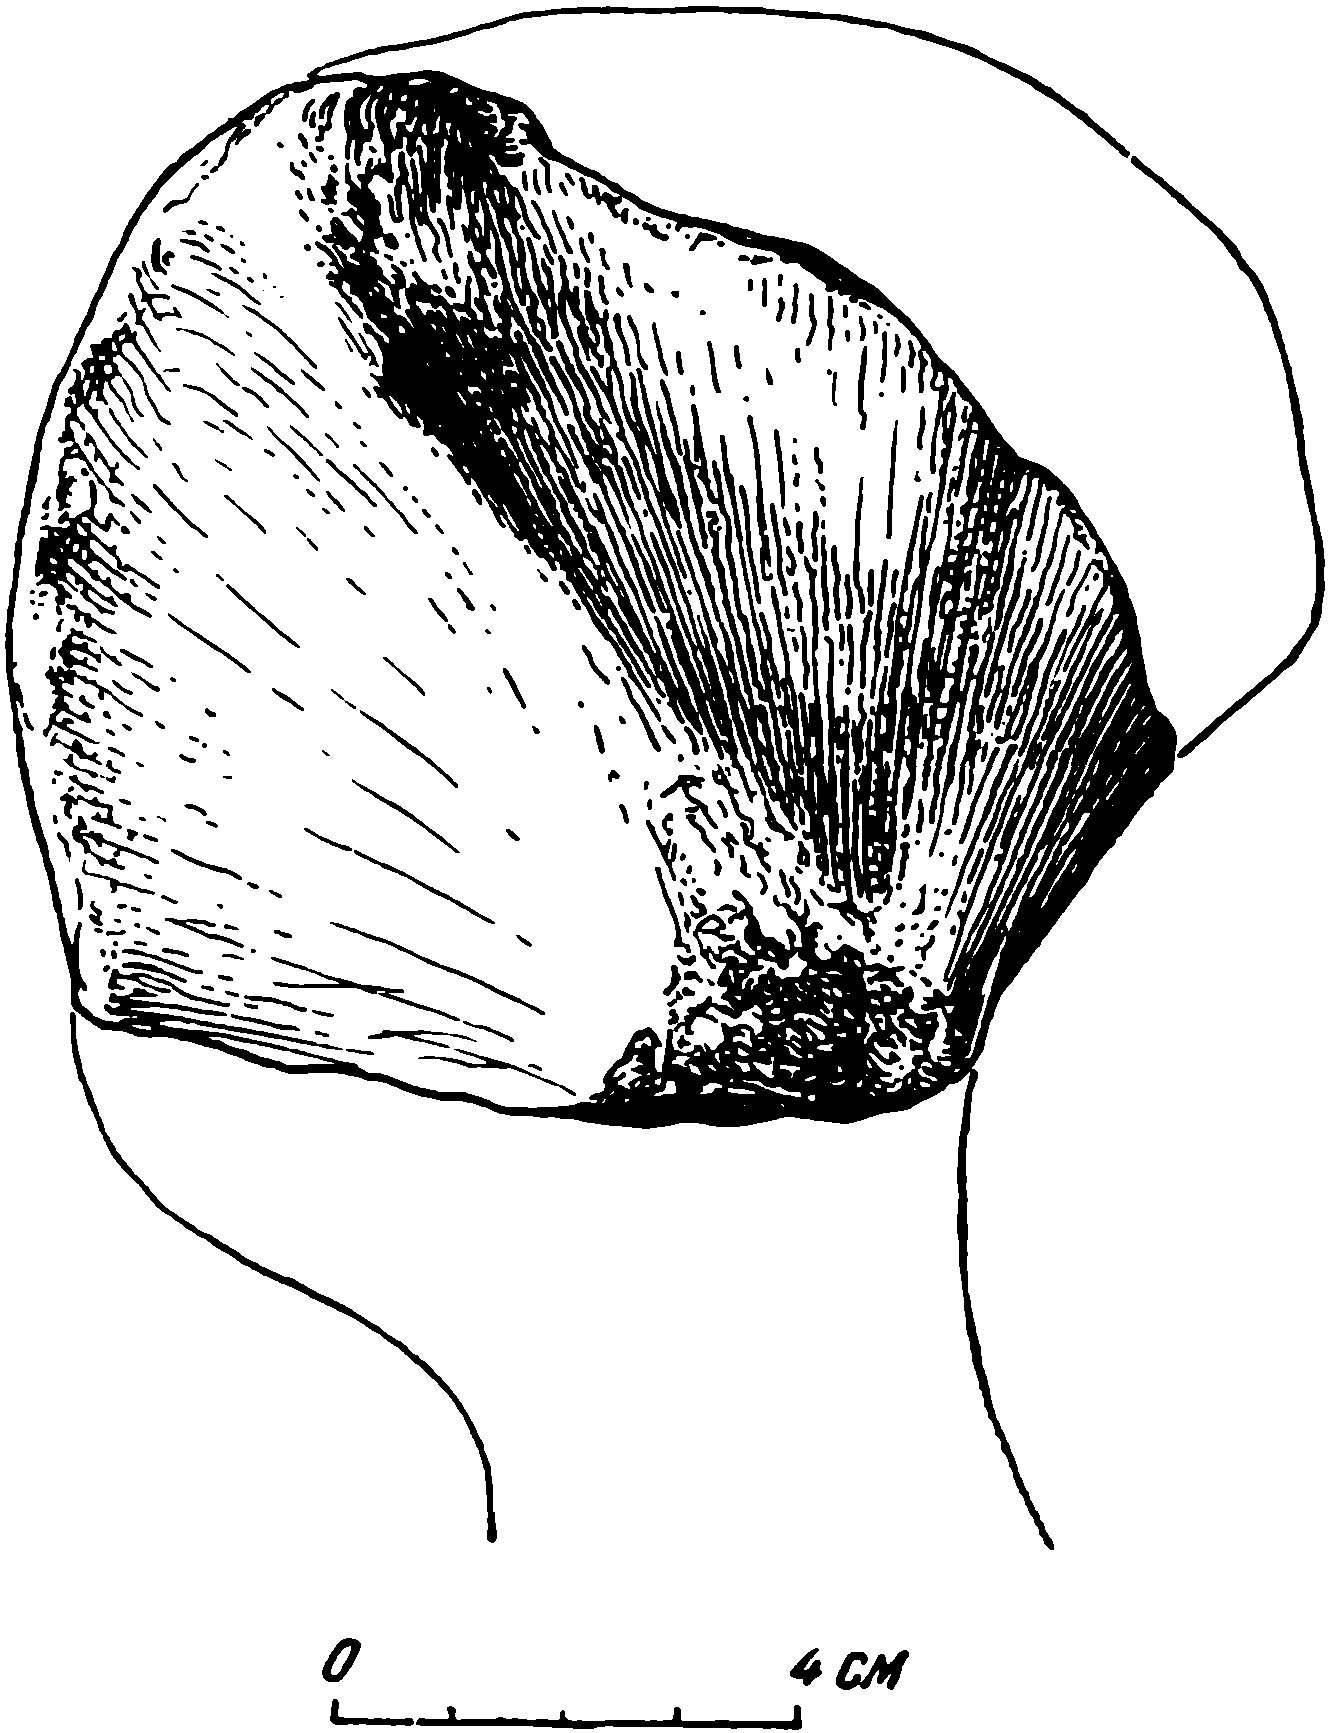 Рис. 64. Phreatosaurus bazhovi gen. et sp. nov. Левая плечевая кость, обломок проксимальной части, ПИН № 294/15. Дорсальная сторона